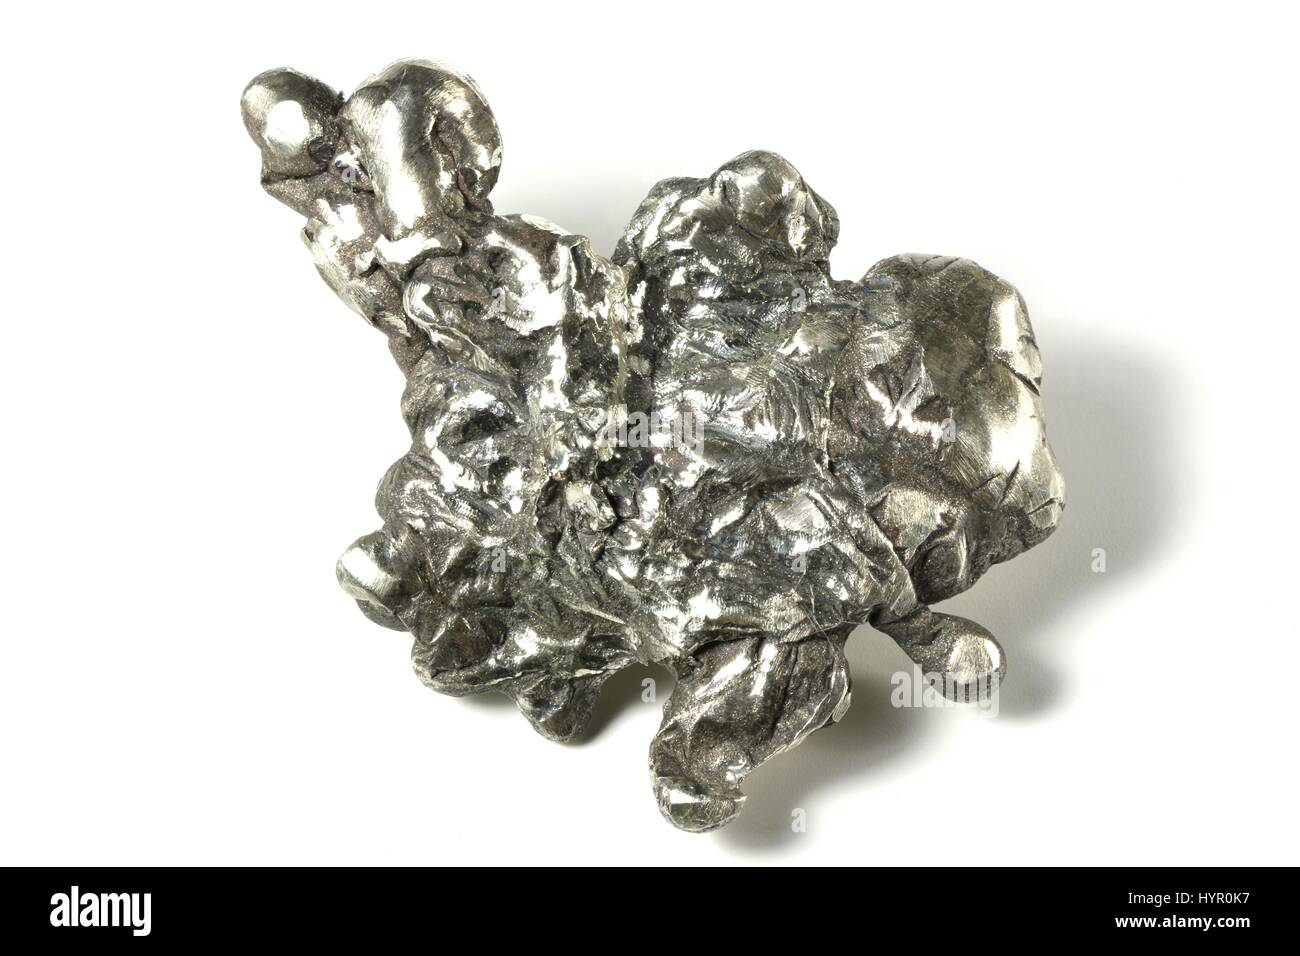 Silber Nugget isoliert auf weißem Hintergrund Stockfotografie - Alamy